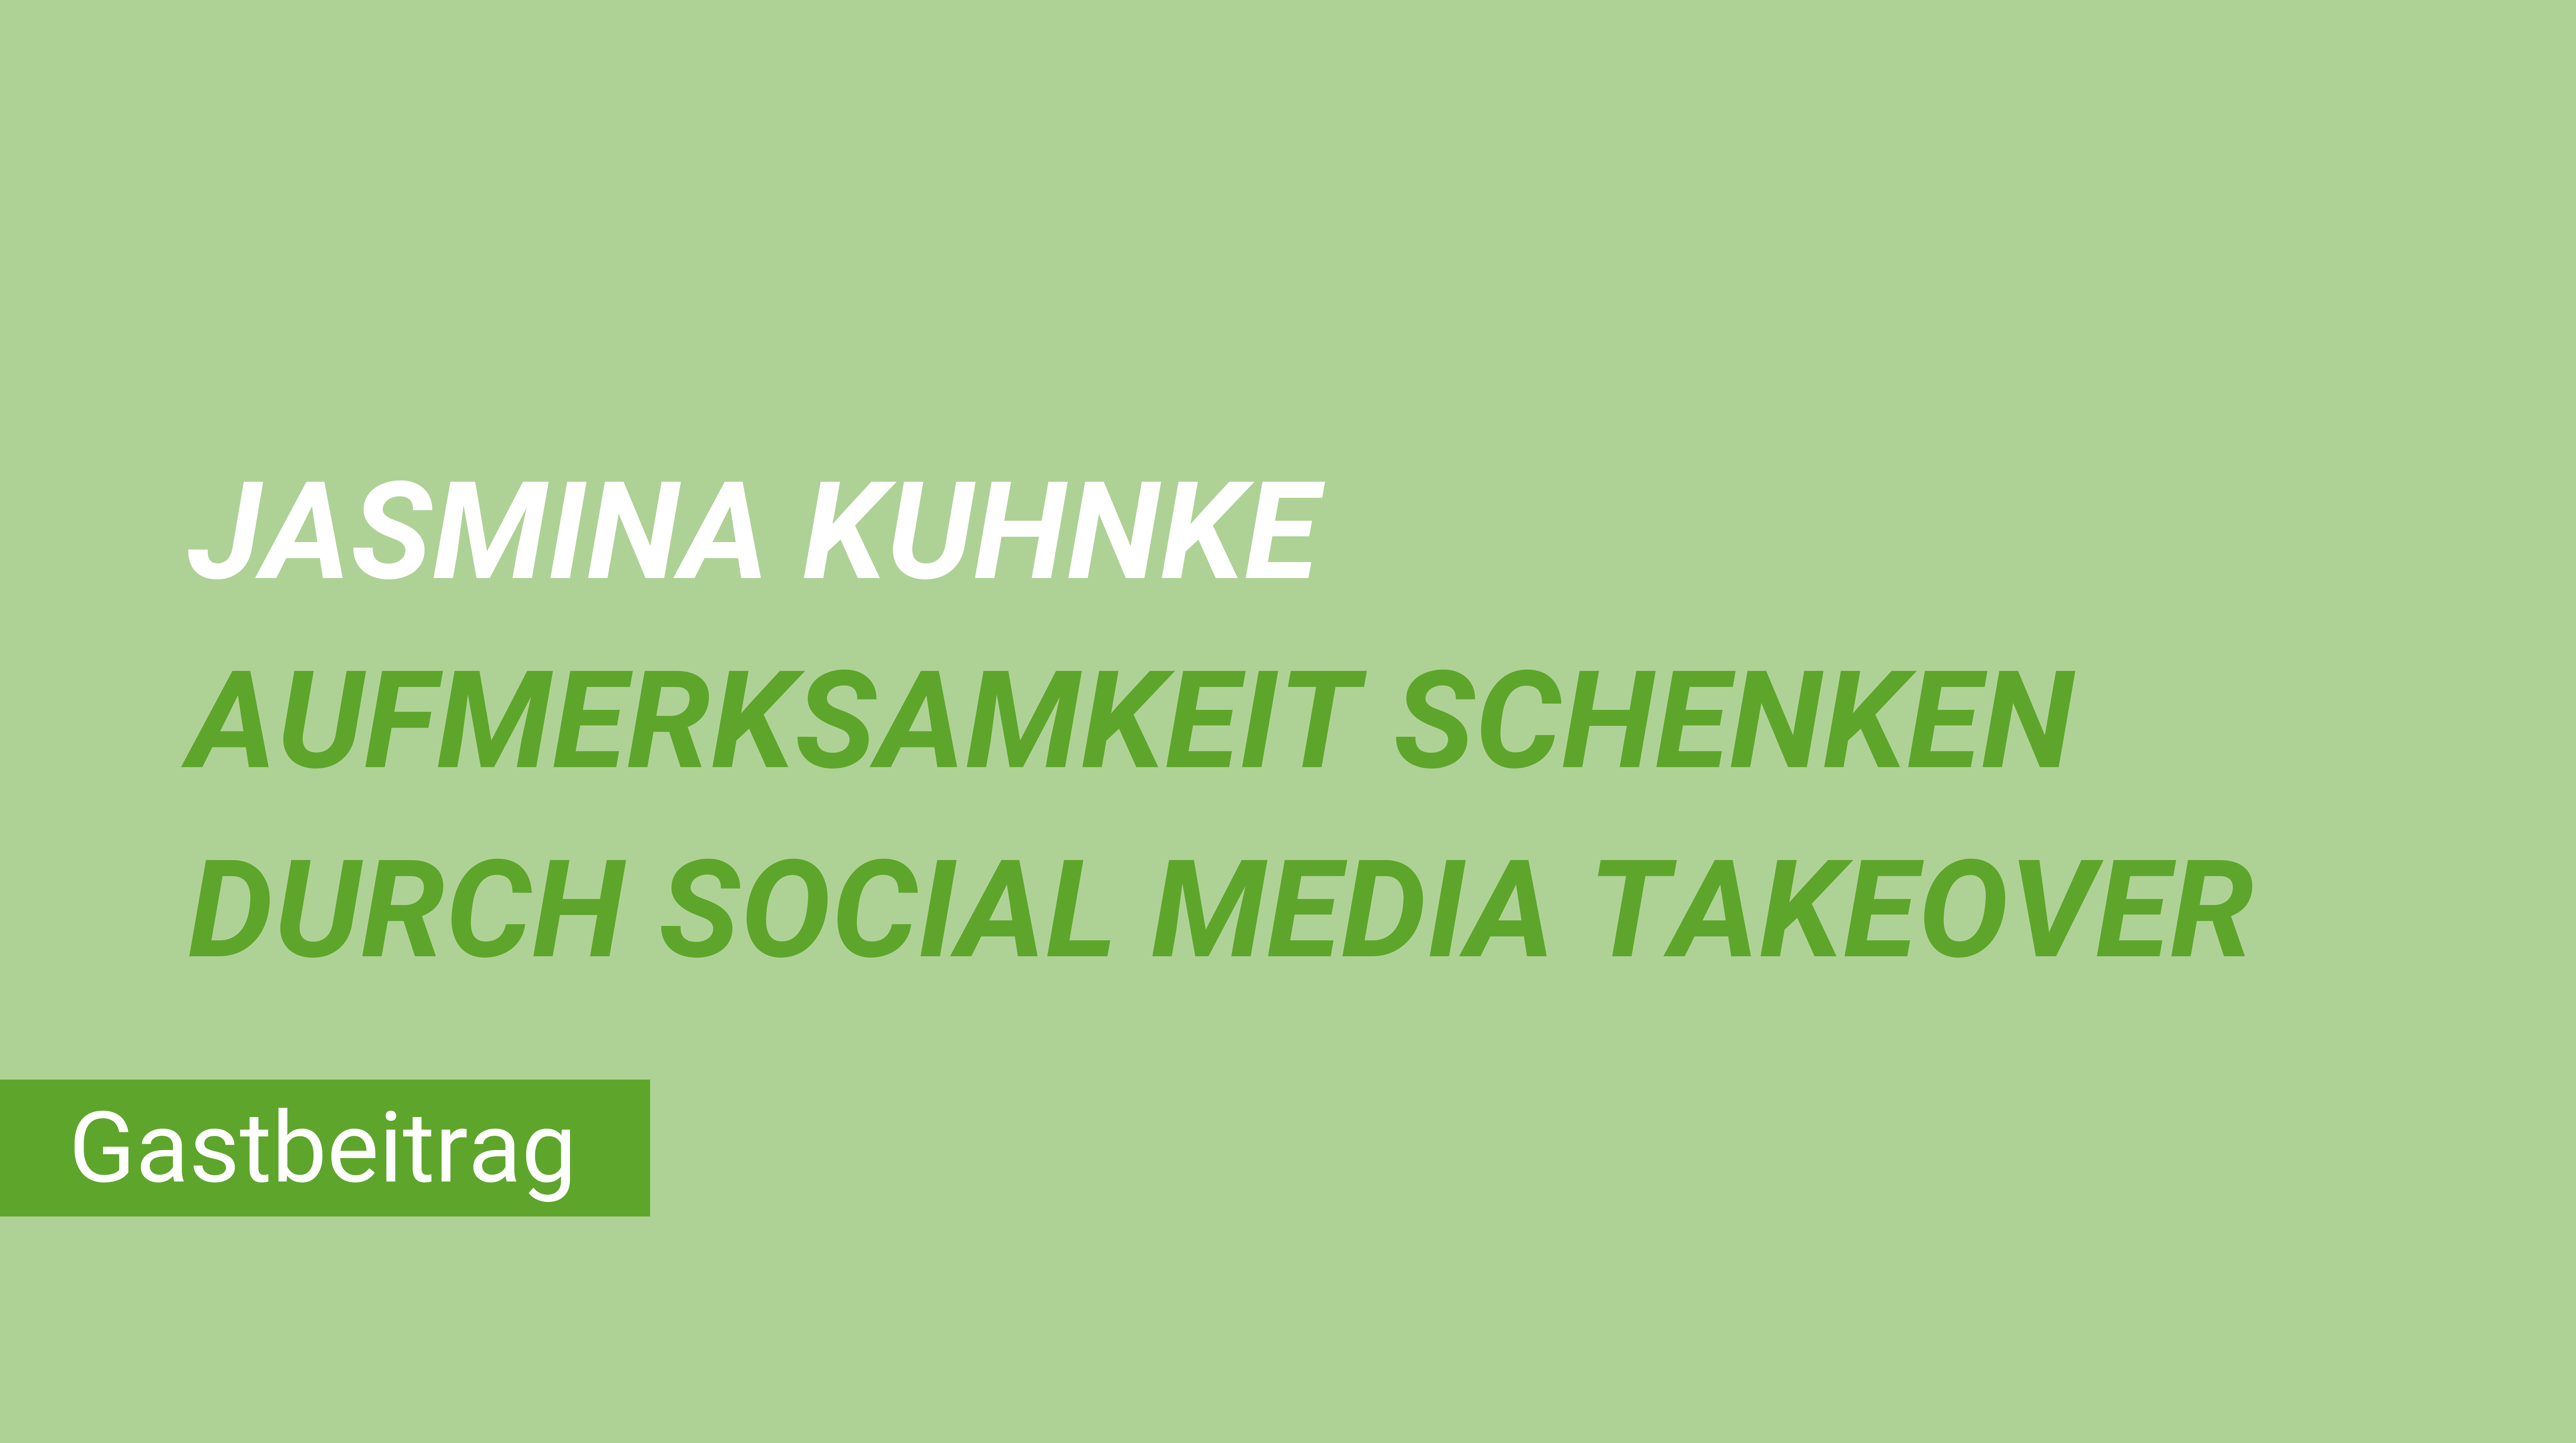 Weiterblättern zum Gastbeitrag Jasmina Kuhnke Aufmerksamkeit schenken durch Social Media-Takeover